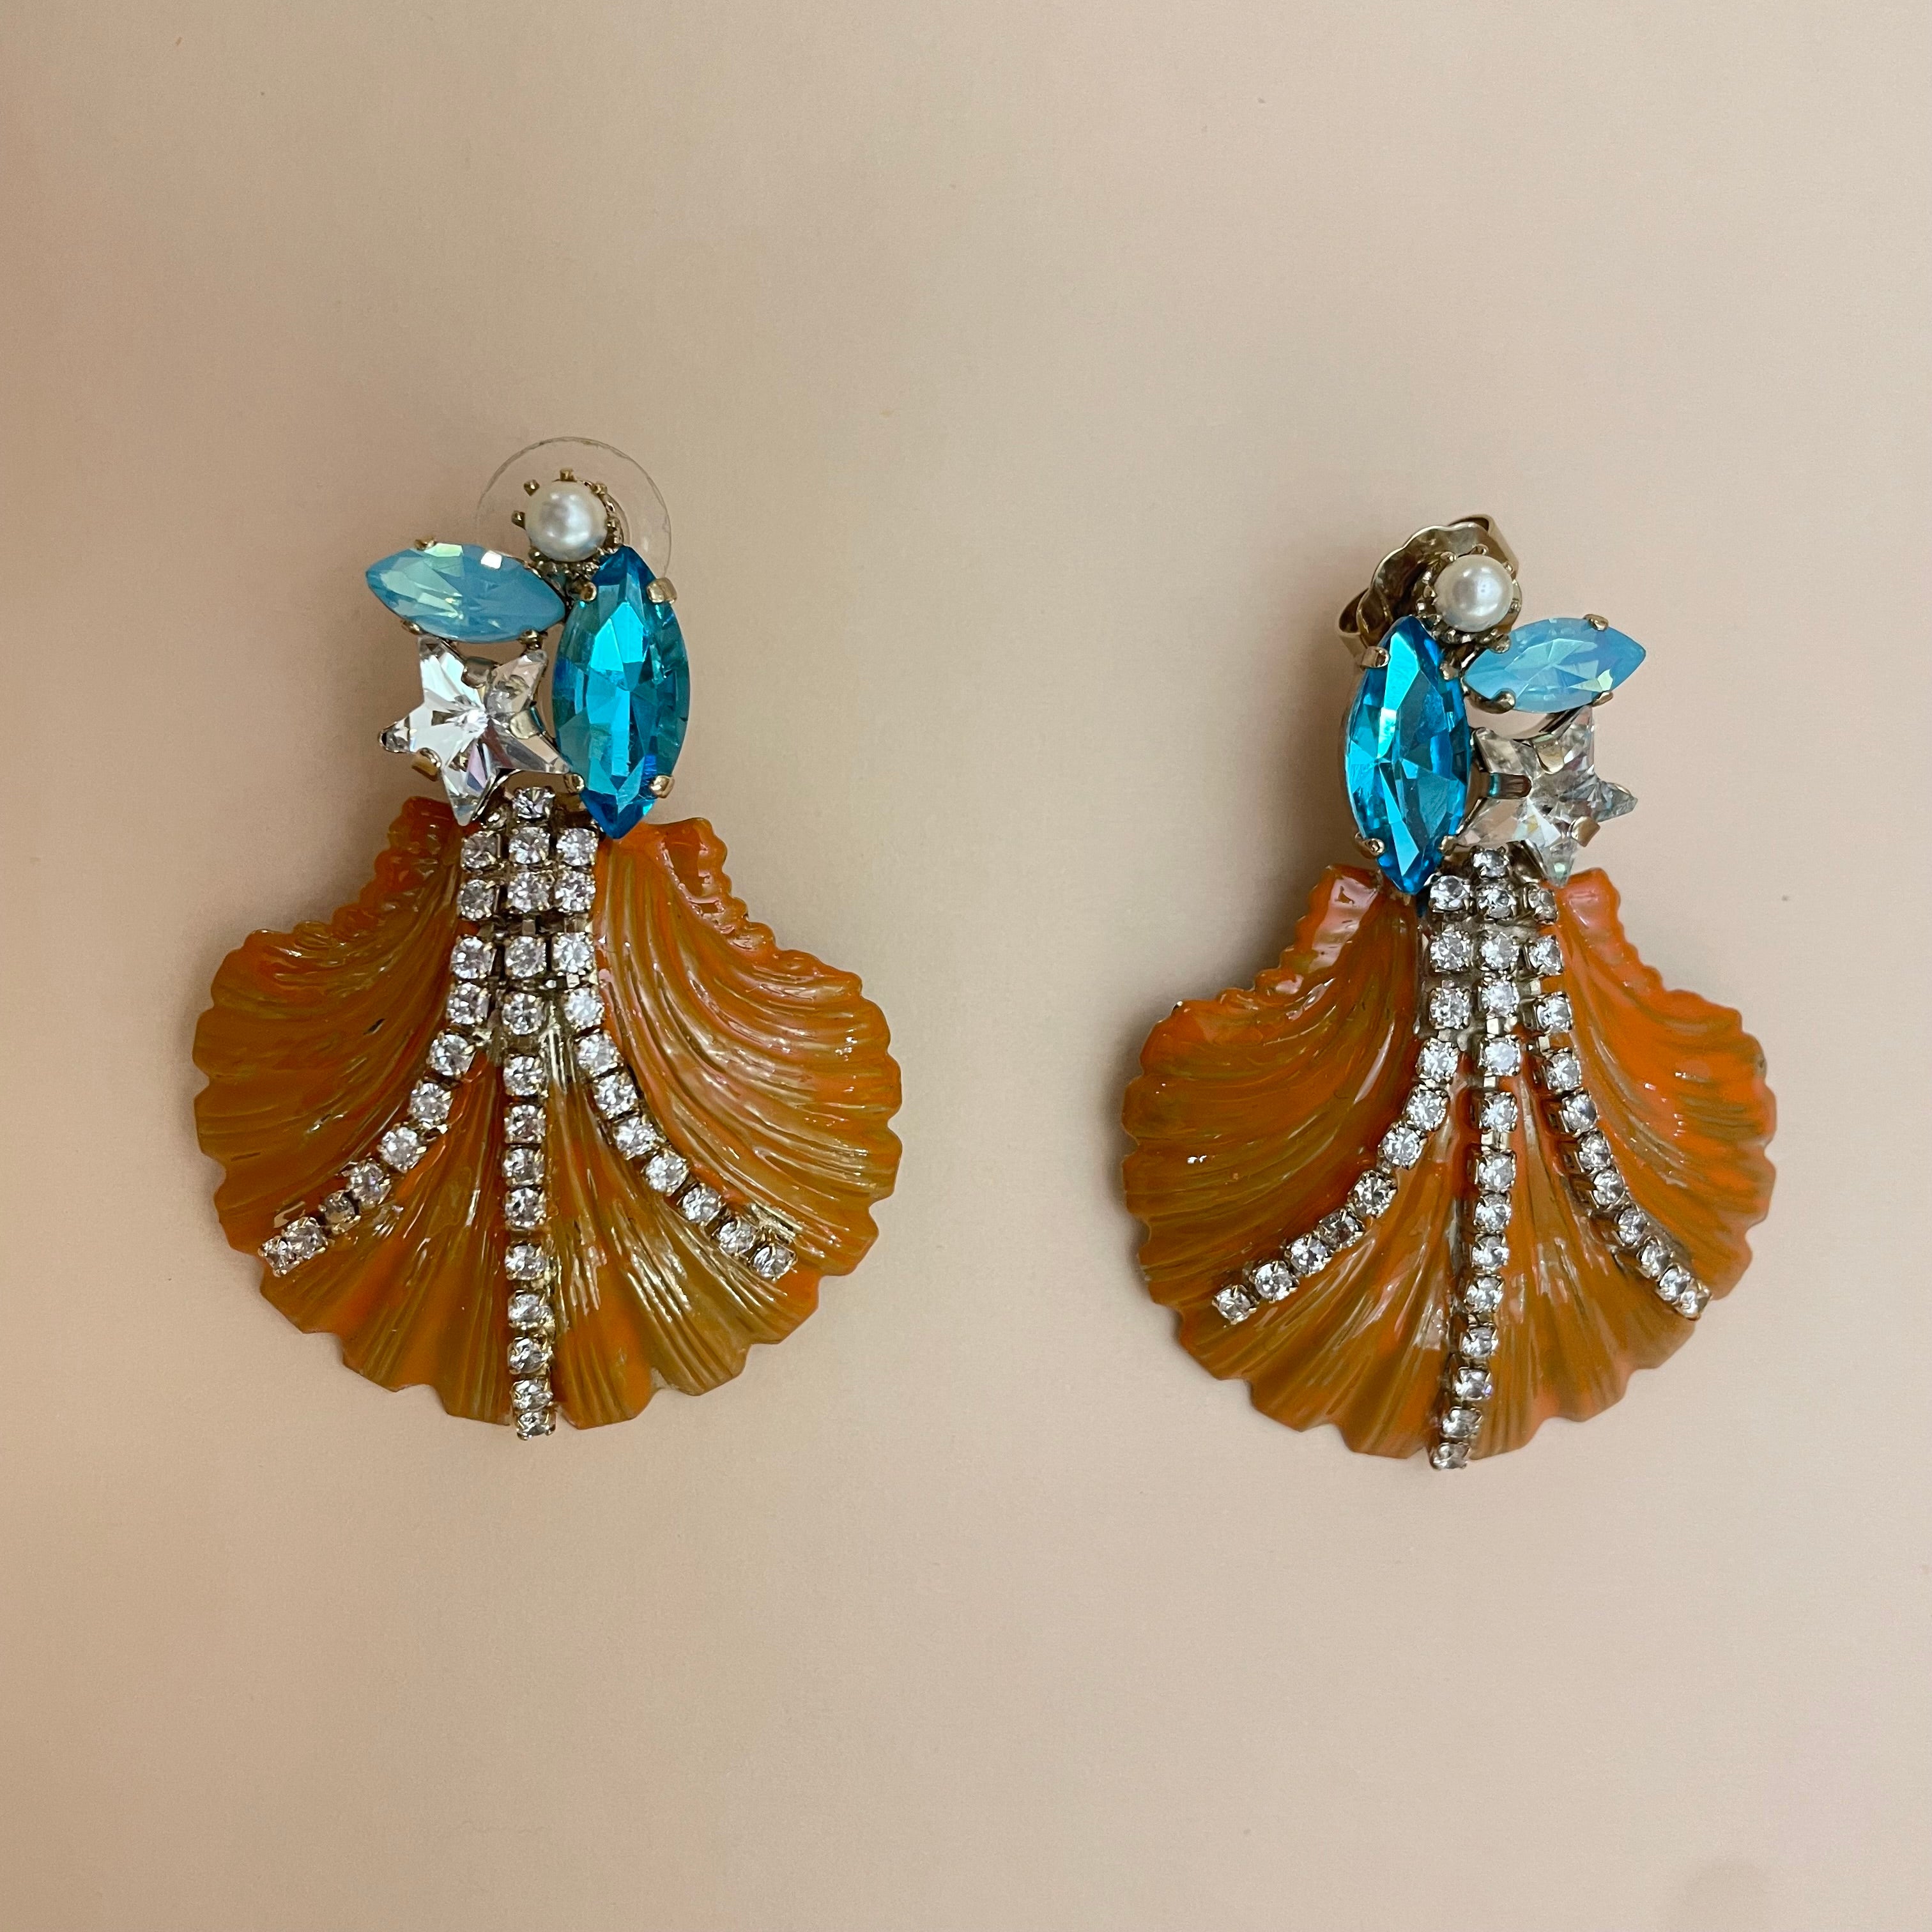 Stunning shell earrings